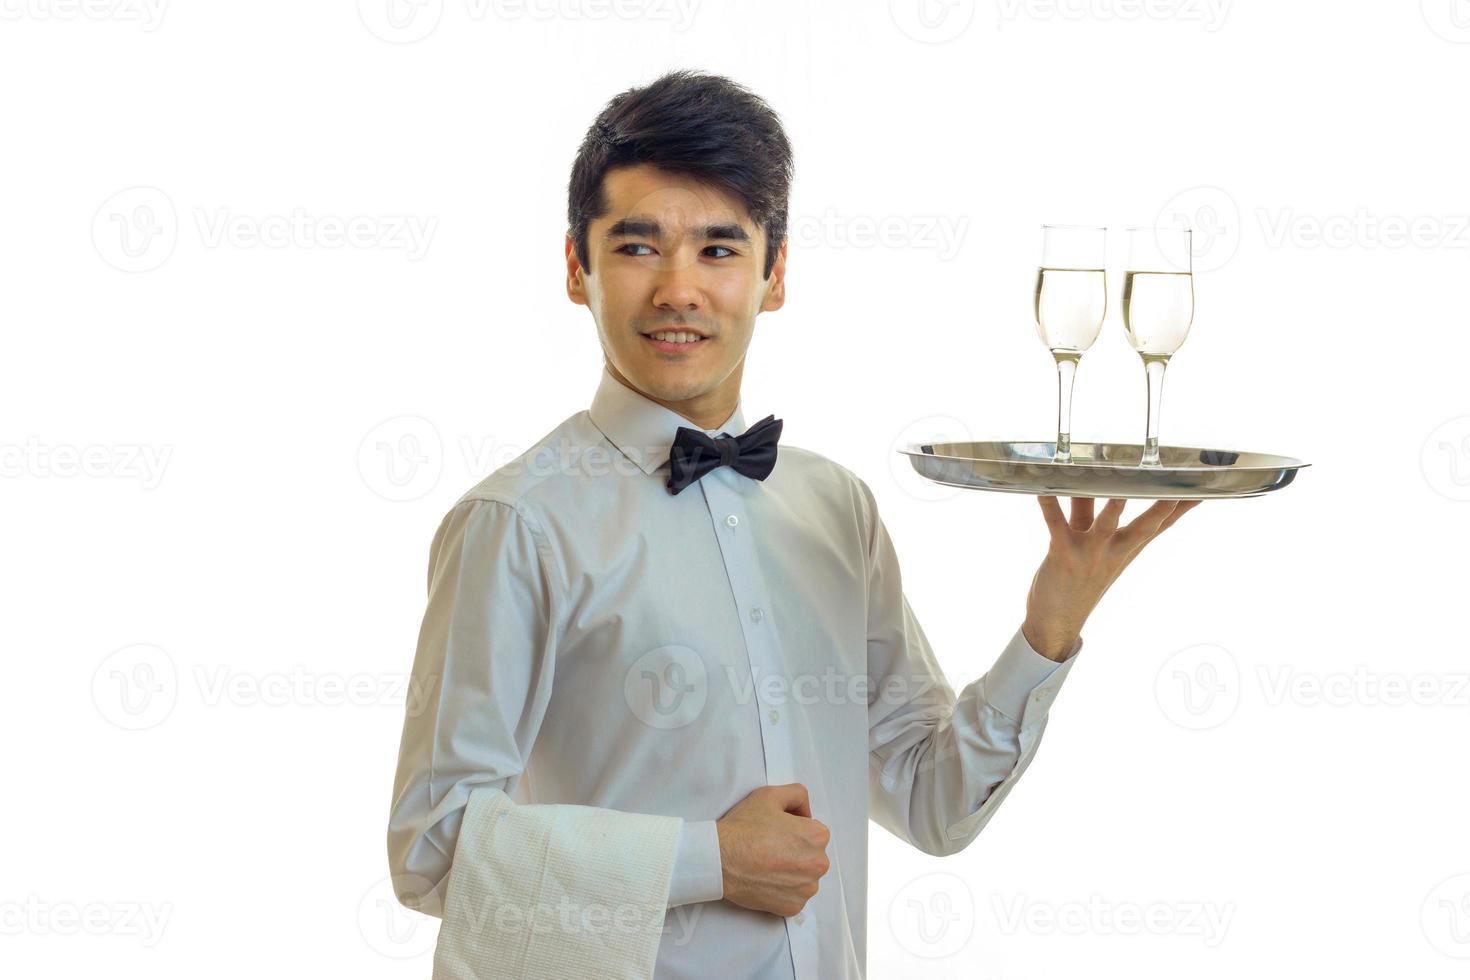 garçom atraente sorridente é reto e levantou na mão uma bandeja com copos de vinho close-up isolado no fundo branco foto